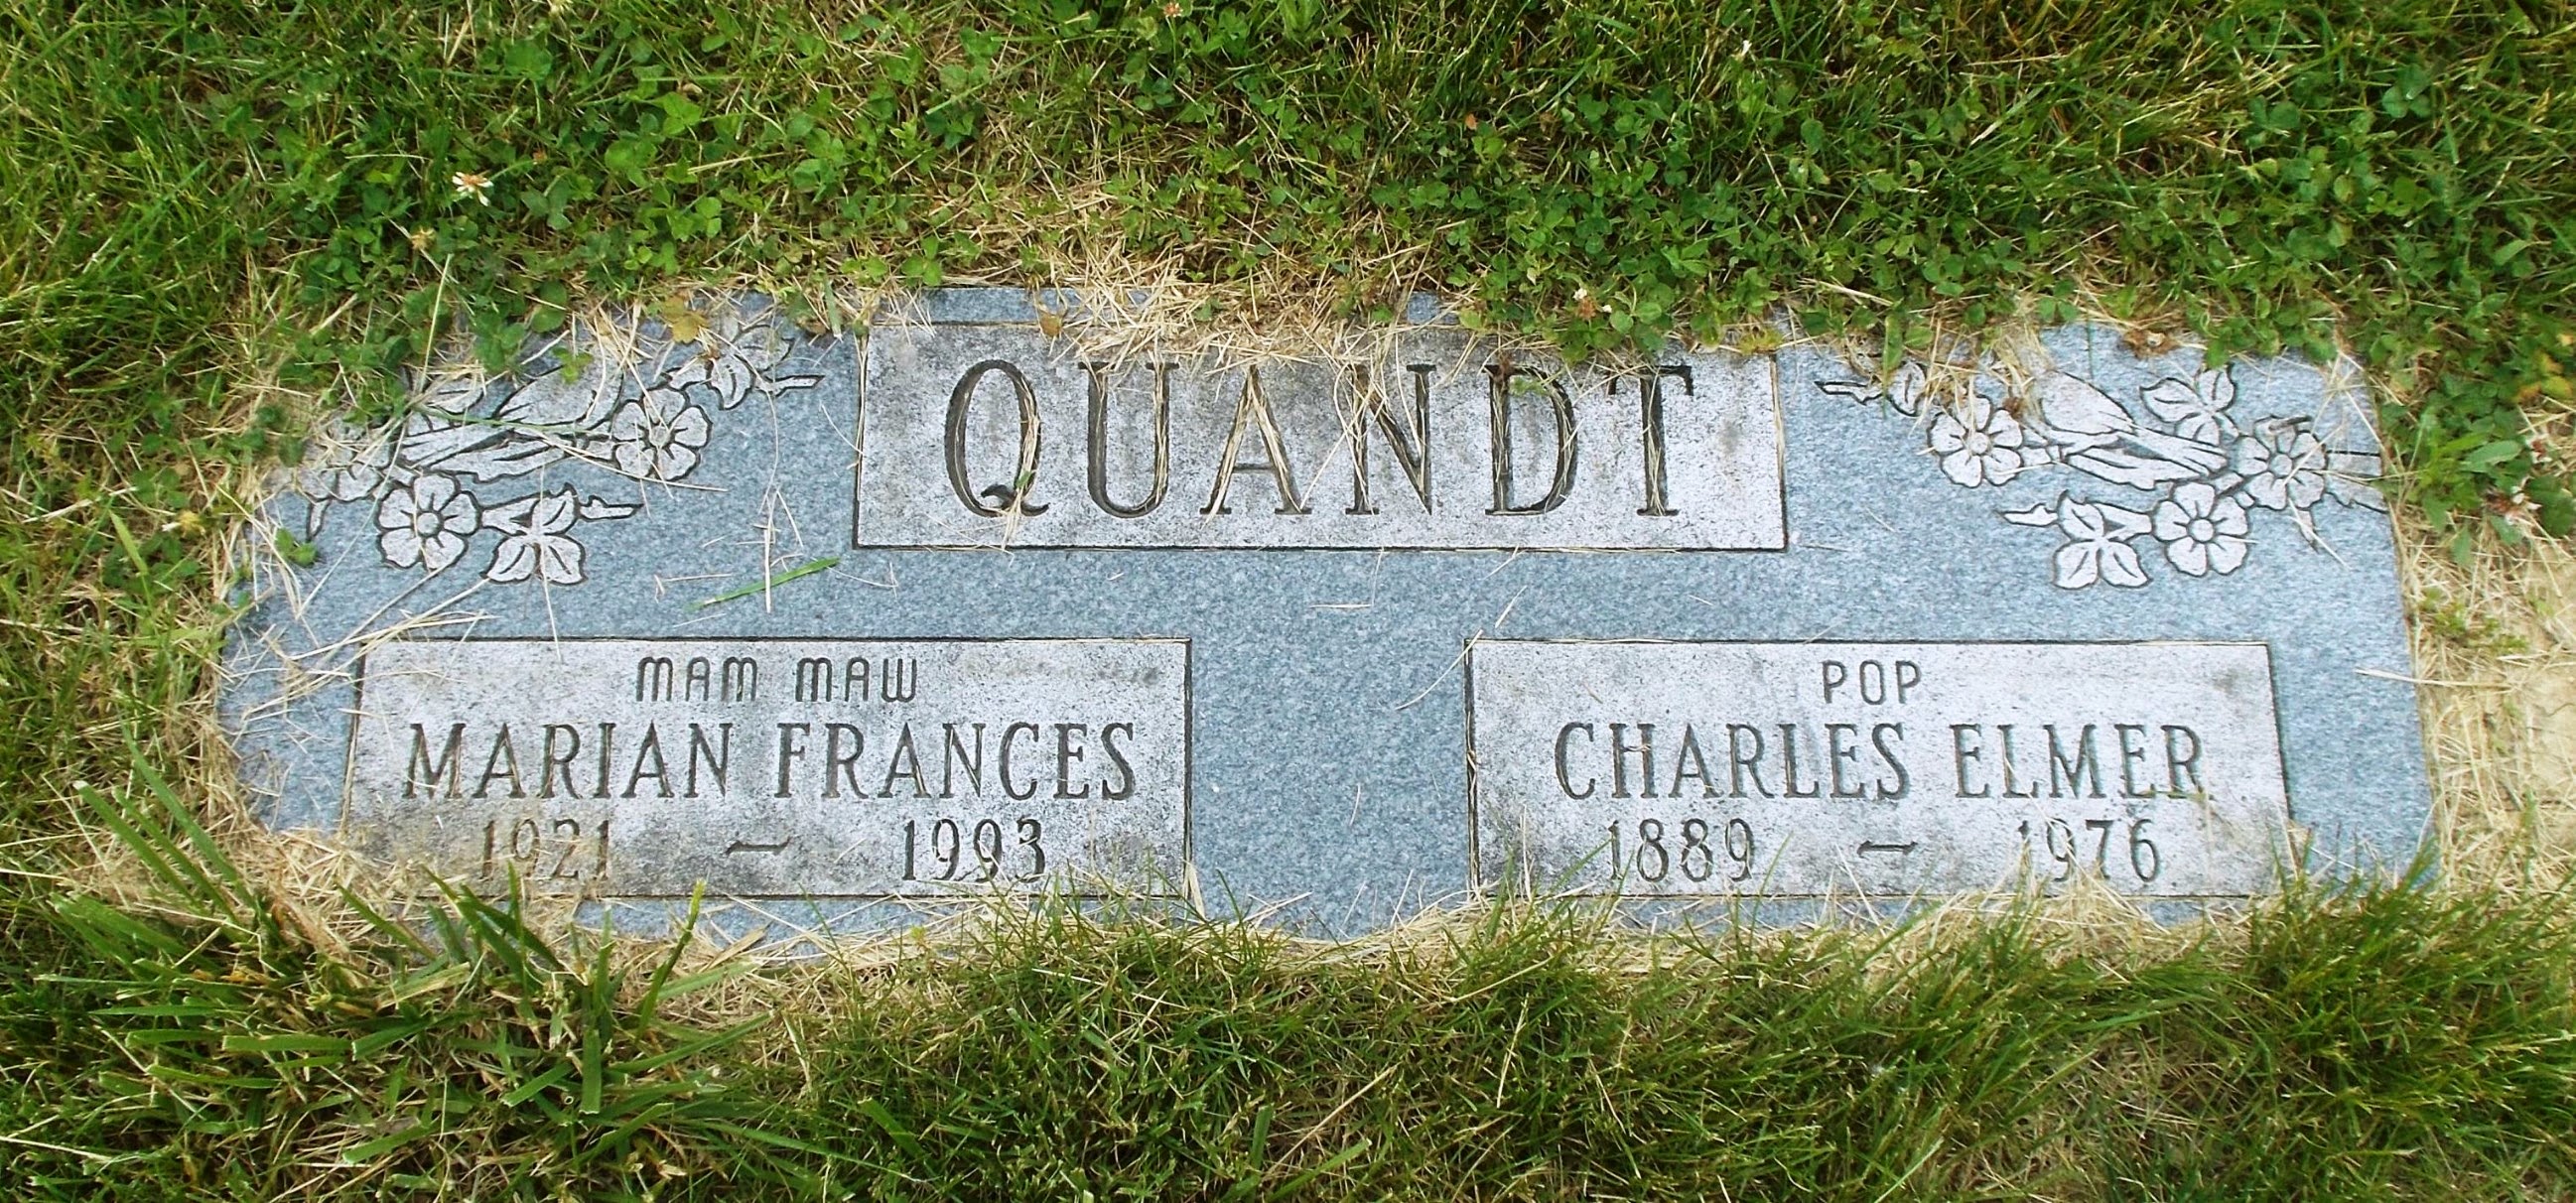 Marian Frances Quandt